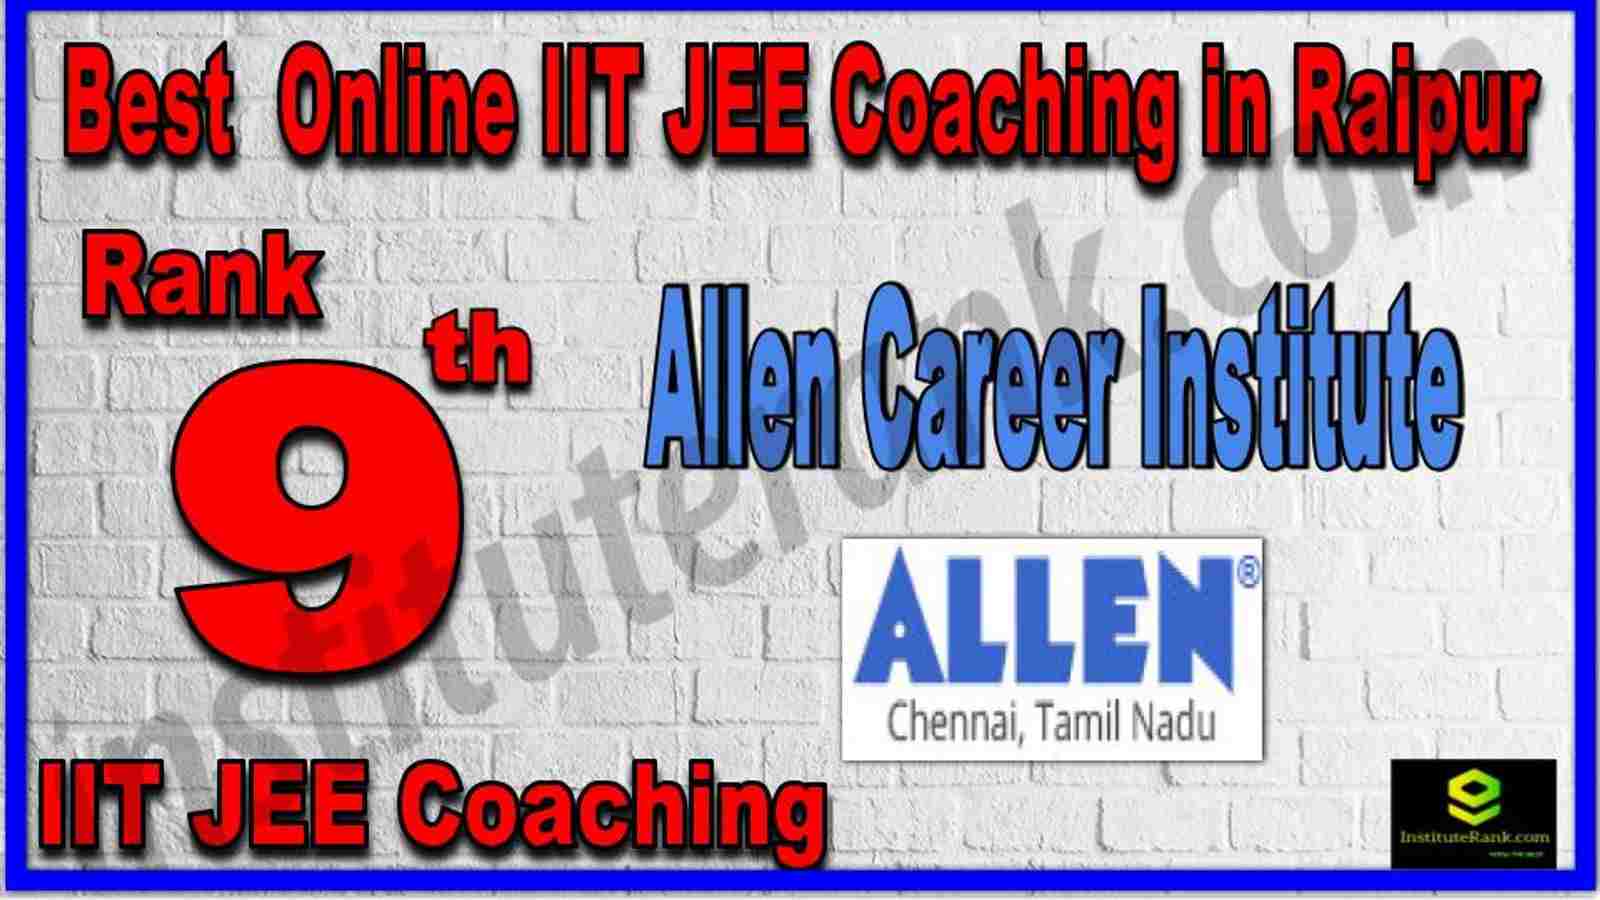 Rank 9th Best Online IIT JEE Coaching in Raipur